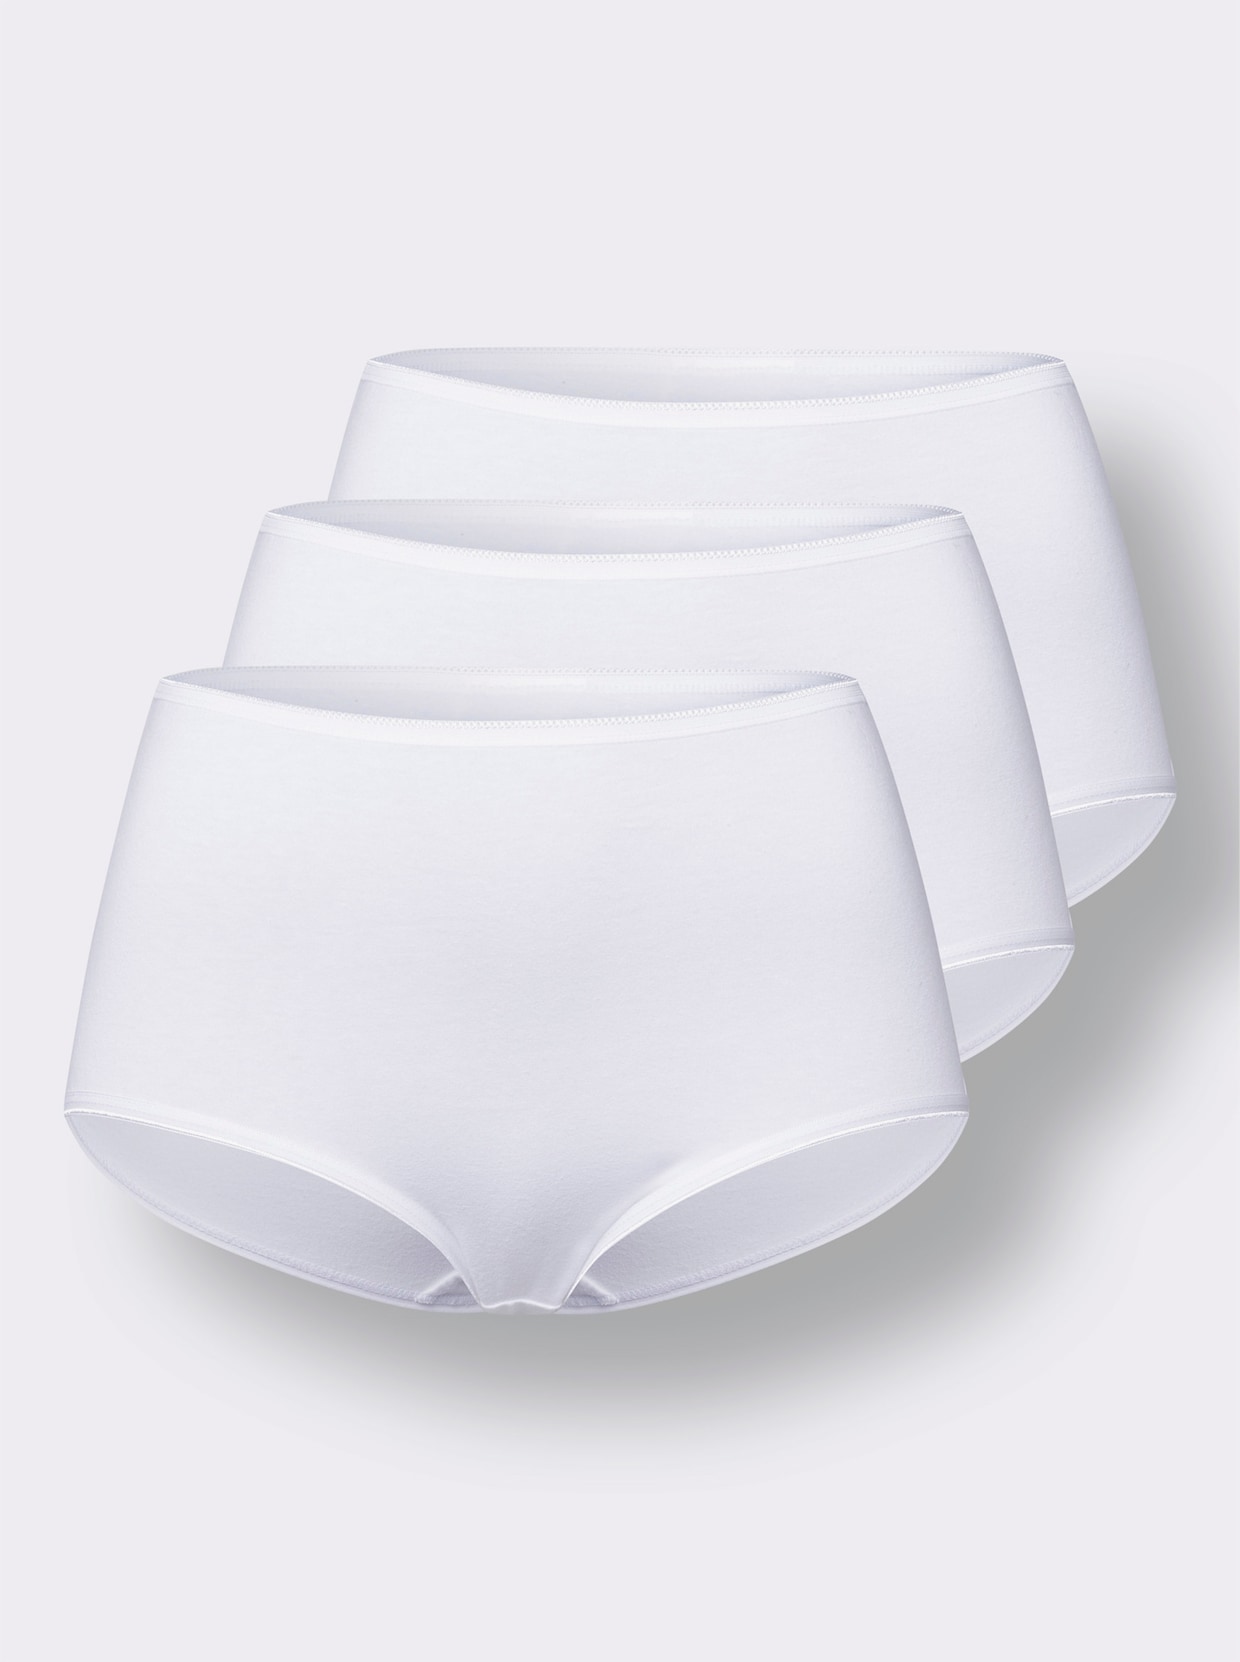 Kalhotky s pasem - 3 kusy bílá